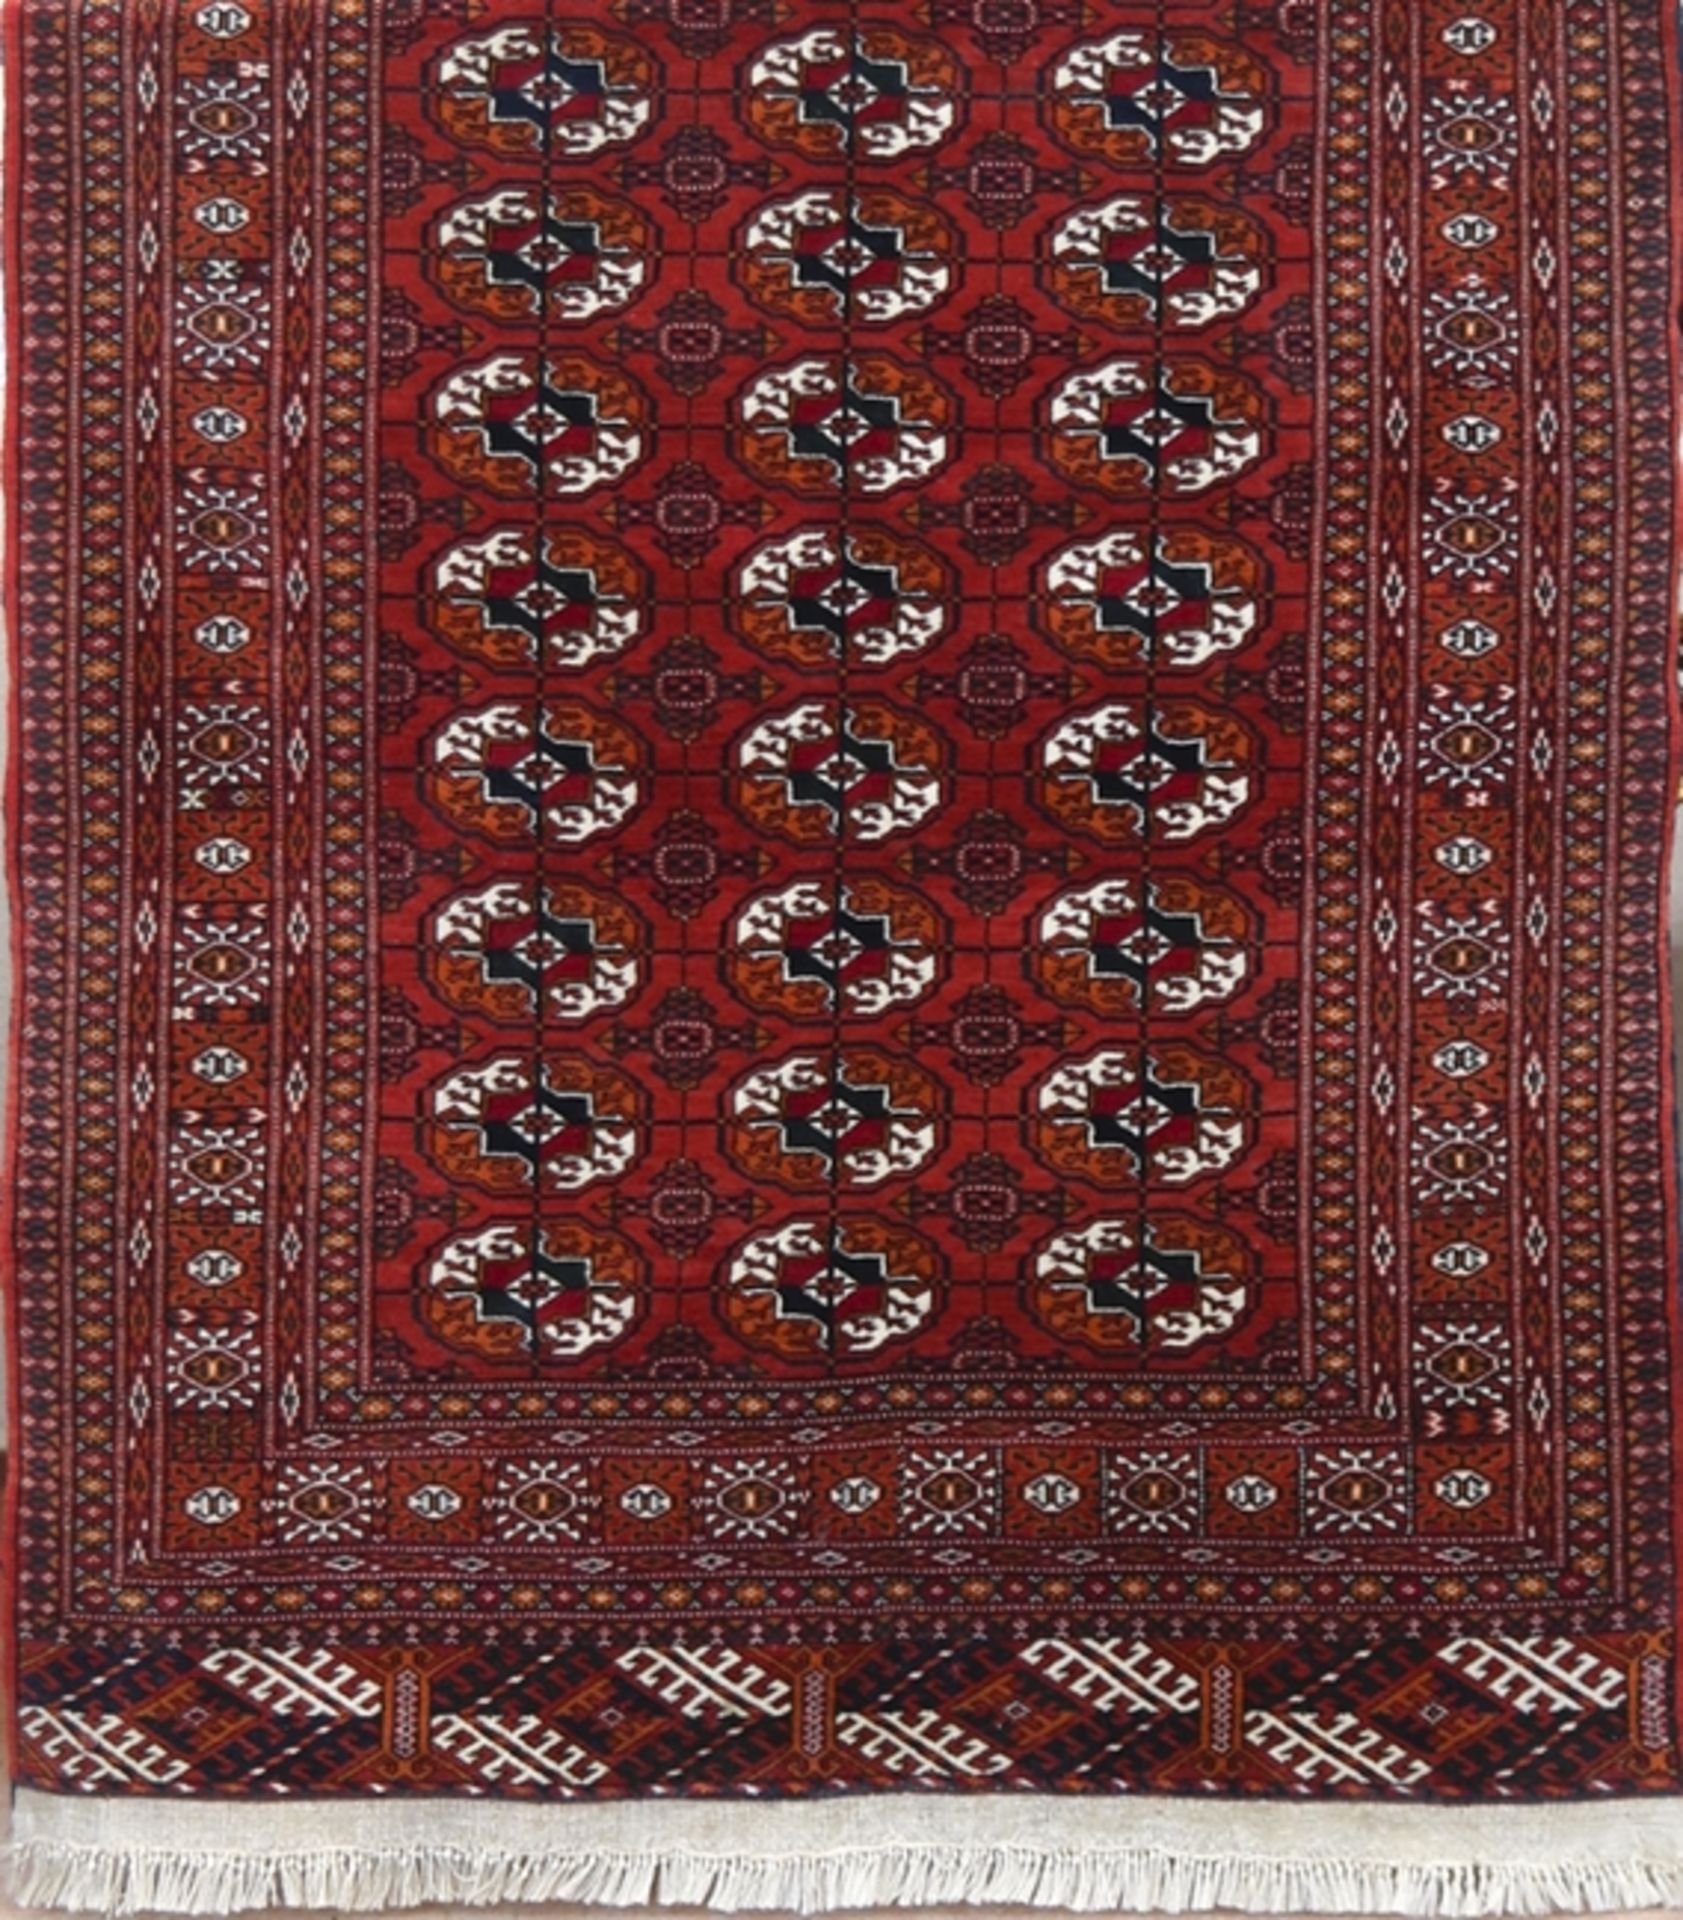 Turkaman, rotgrundig mit durchgehendem schwarz/weißem Muster, 160x115 cm